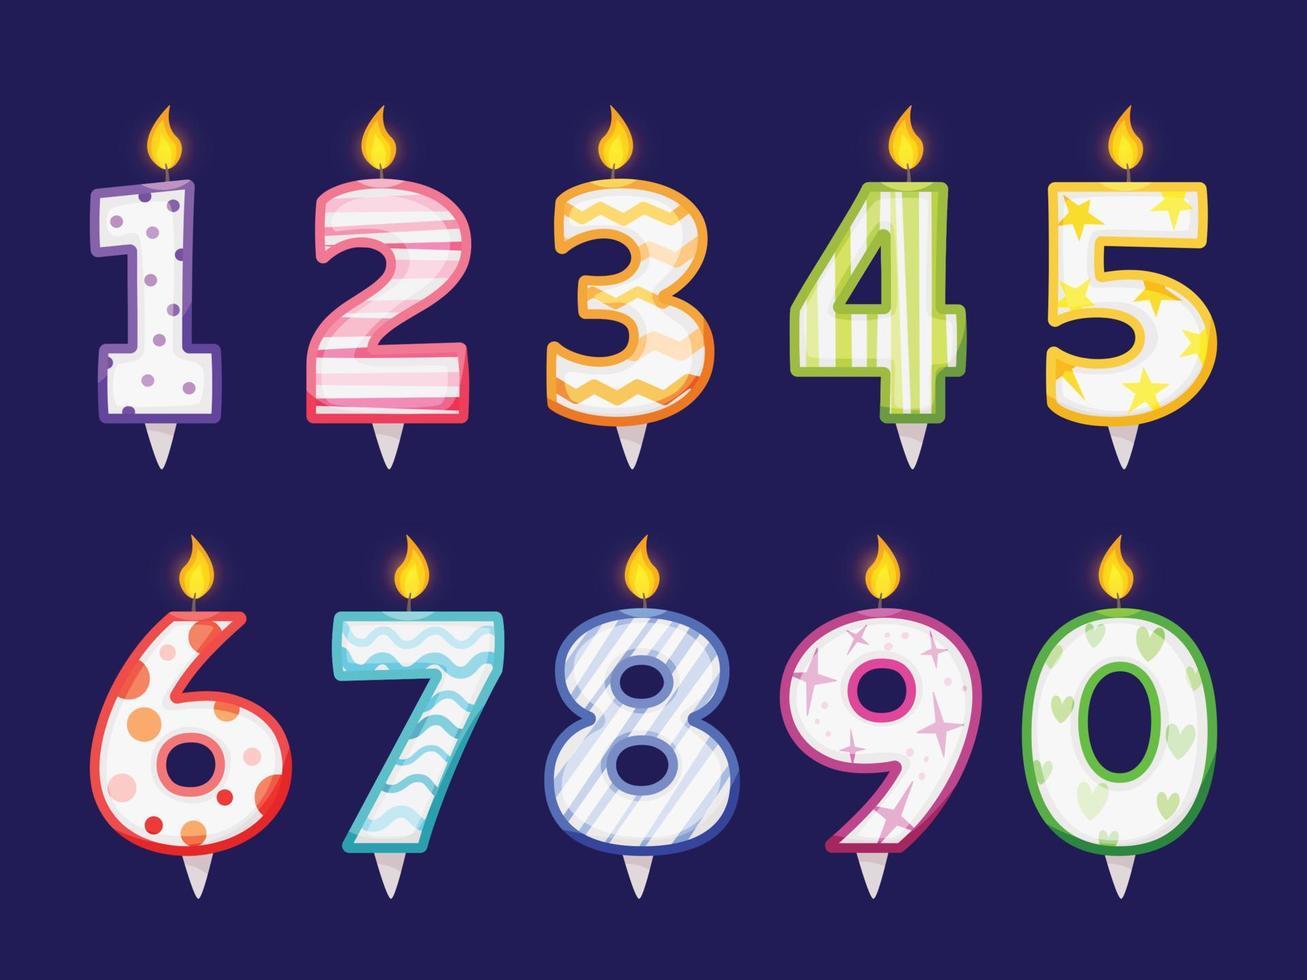 brandend kaars getallen voor taart decoratie, verjaardag partij viering. kinderen verjaardagen of verjaardag aantal kaarsen met vlammen vector reeks